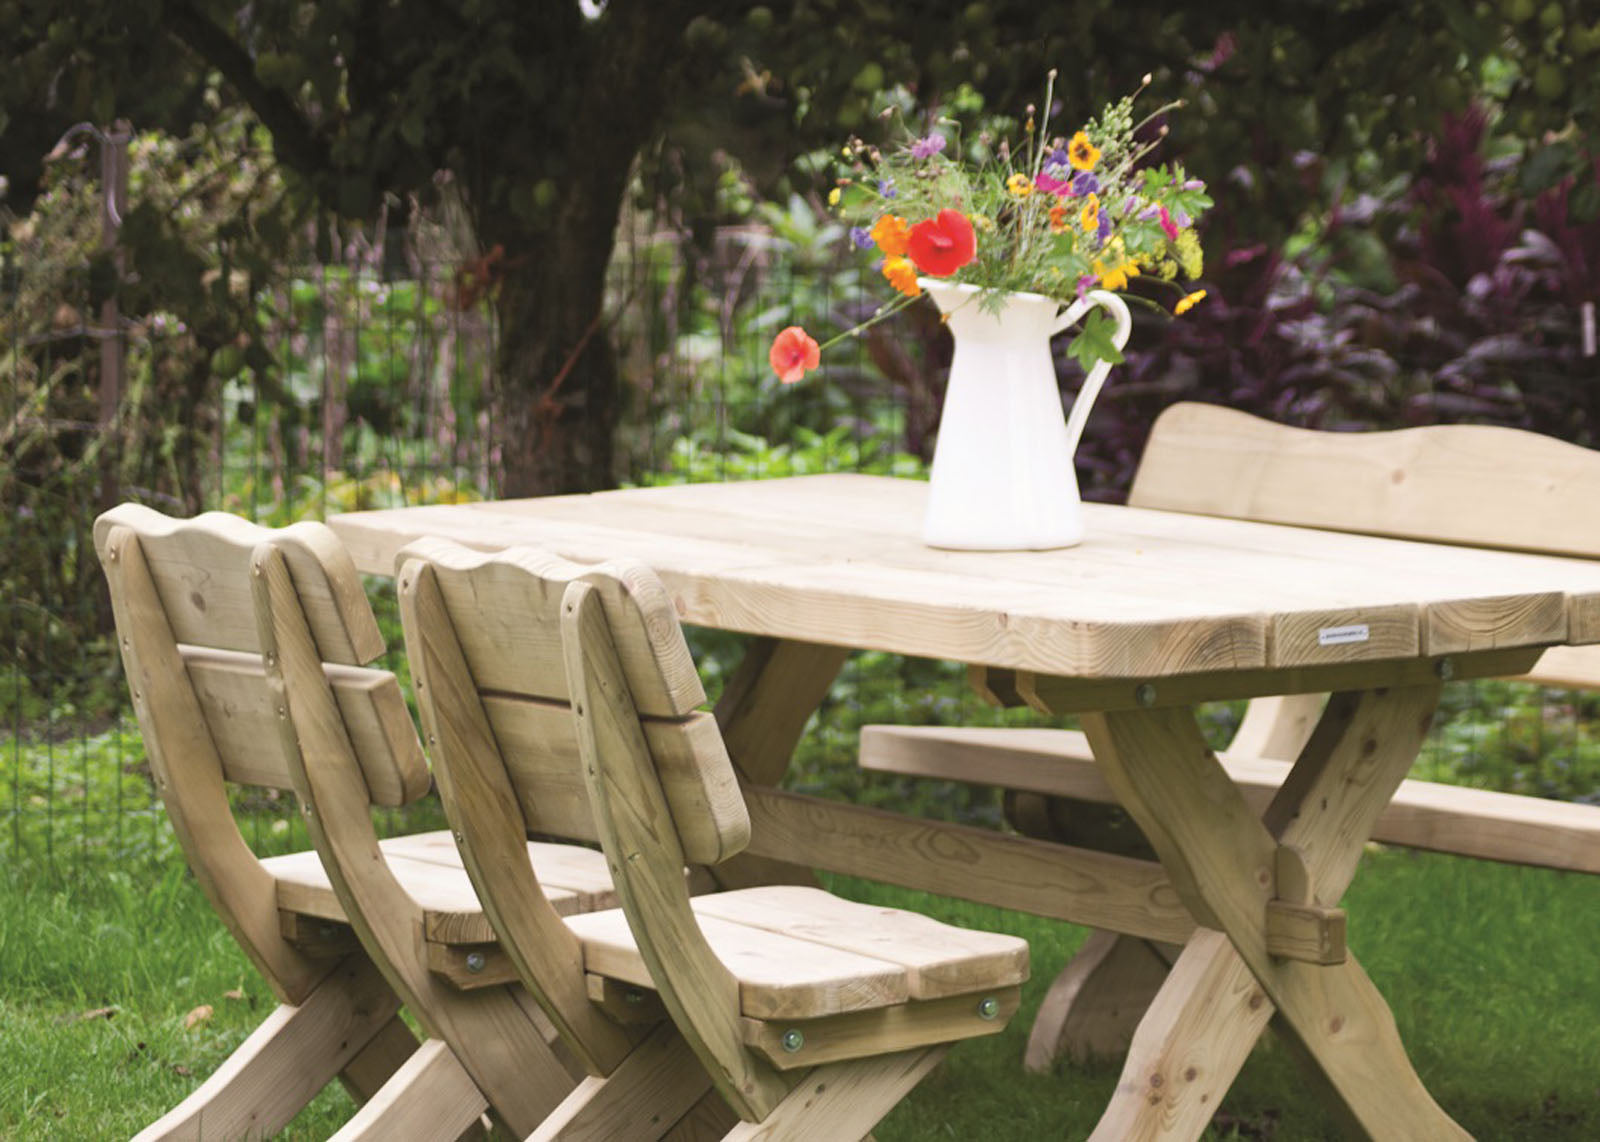 methaan voordeel Veranderlijk Houten tuinset landelijke stijl 170 cm met 1 tafel en 4 stoelen